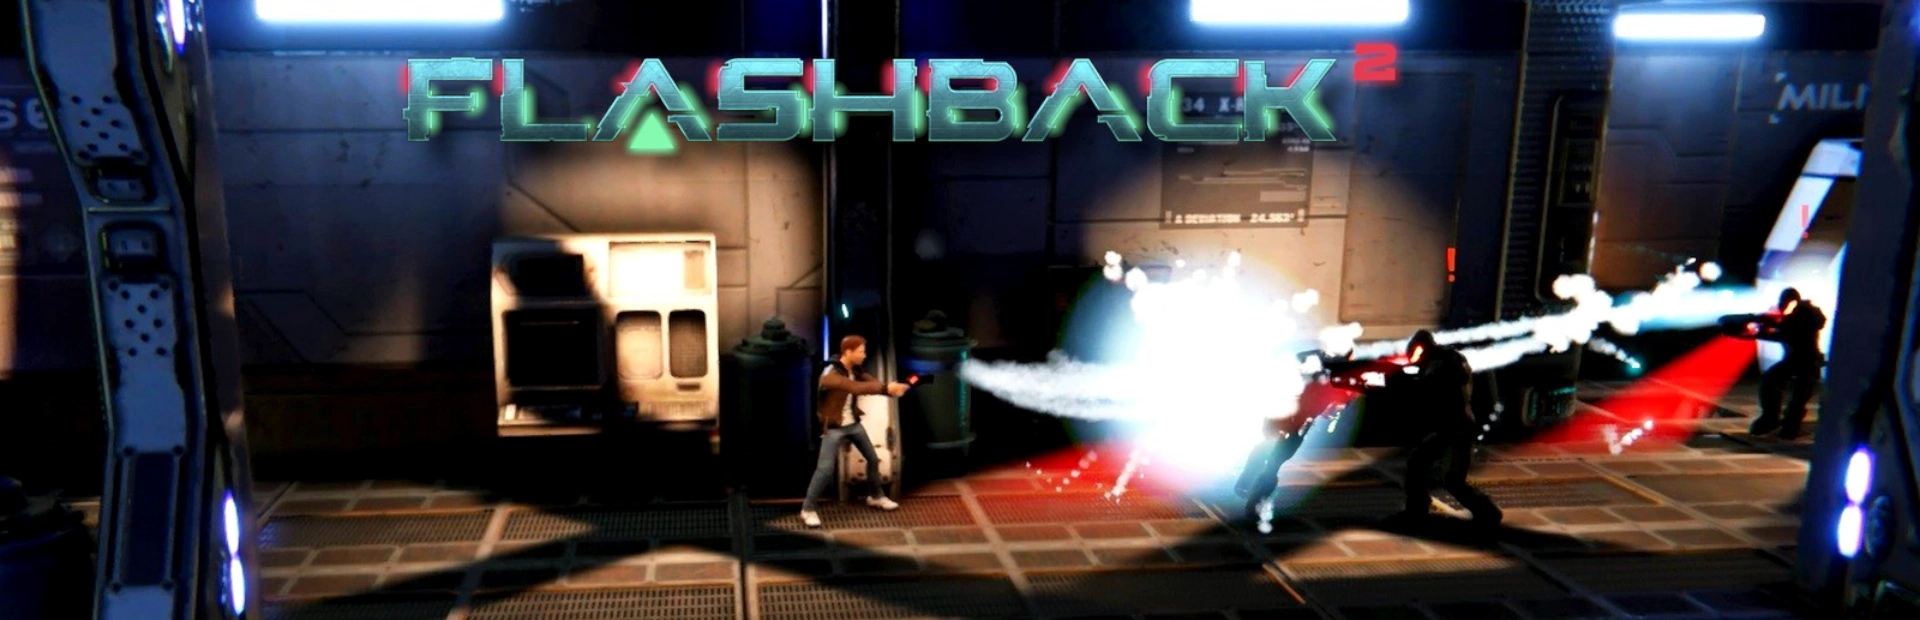 دانلود بازی Flashback 2 برای کامپیوتر | گیمباتو